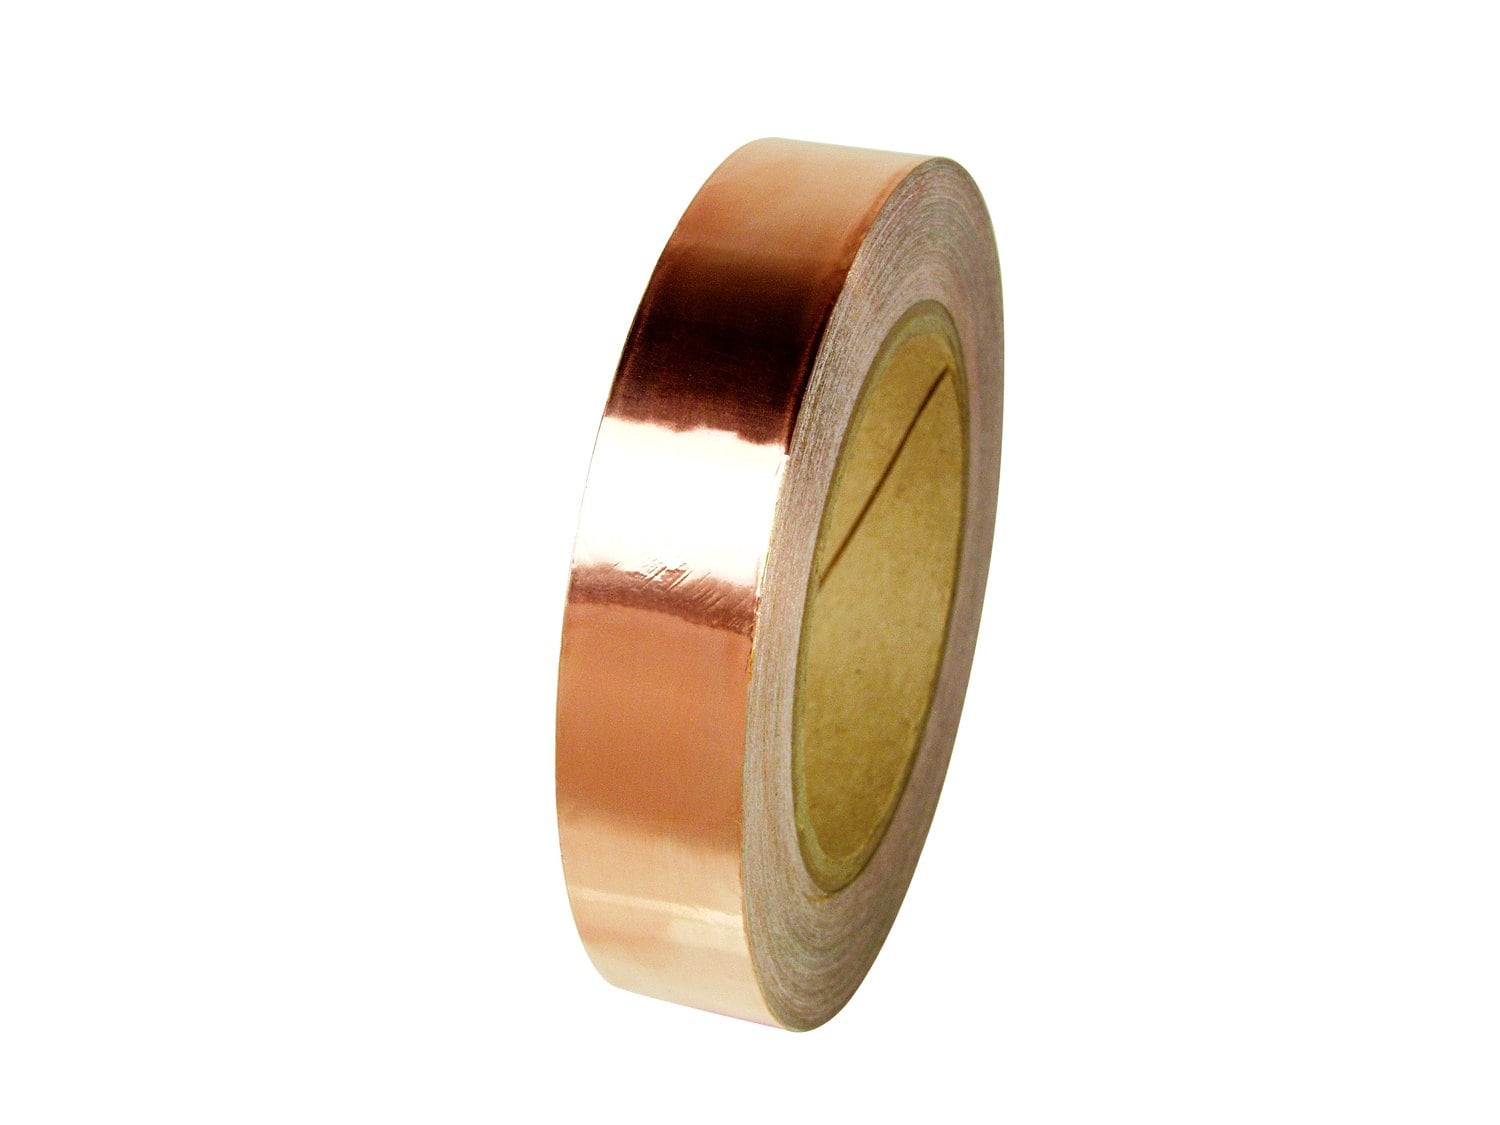 7010304182 - 3M Copper Foil Tape 1126, 2 in x 36 yd, Log Rolls, 5 Rolls/Case